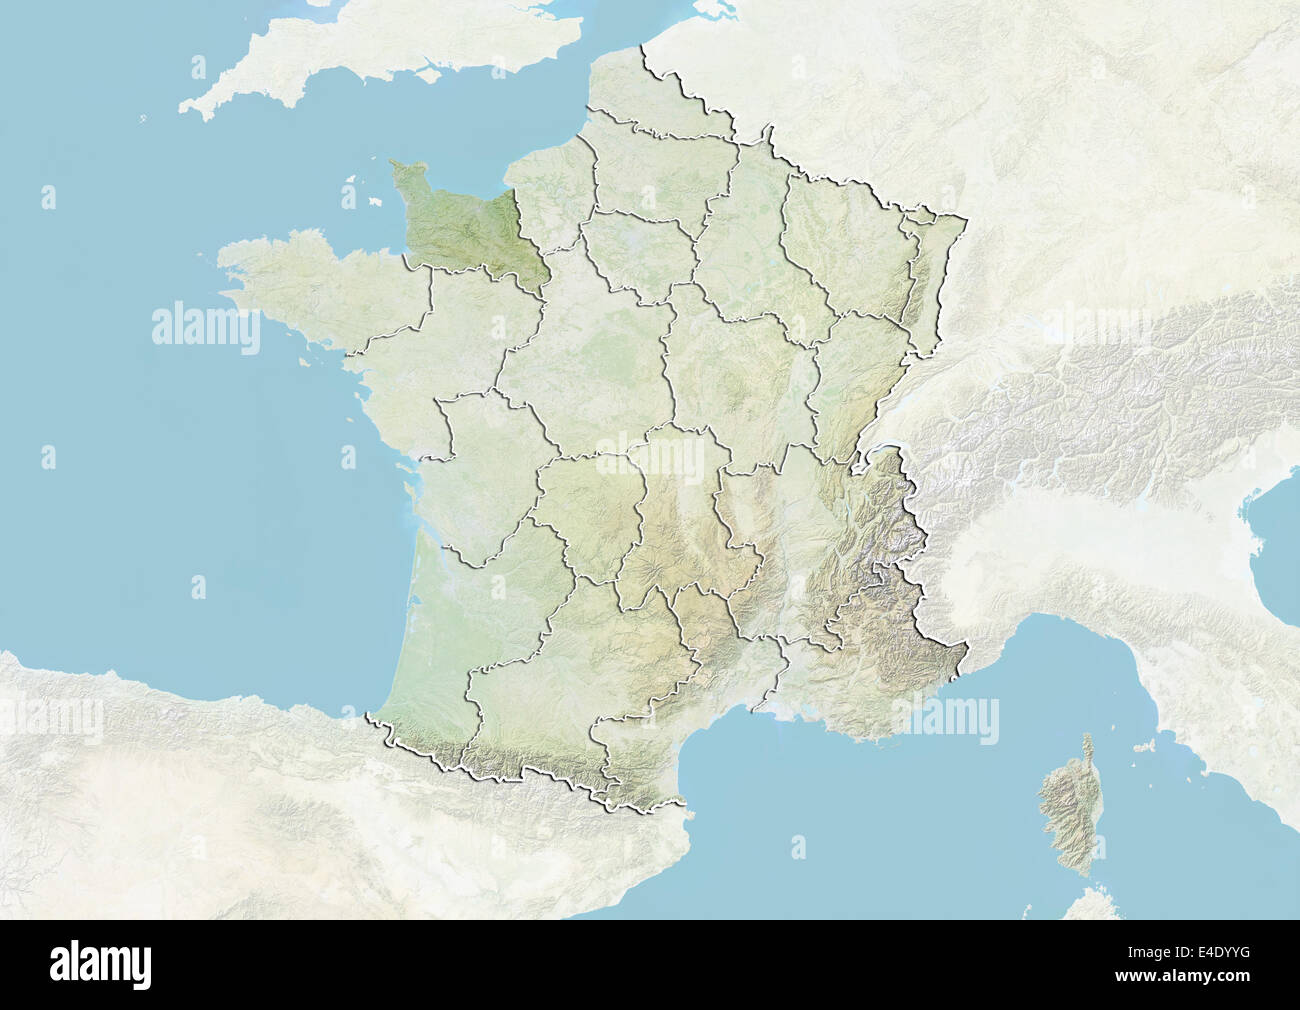 La France et la région de Basse-Normandie, carte en relief Banque D'Images